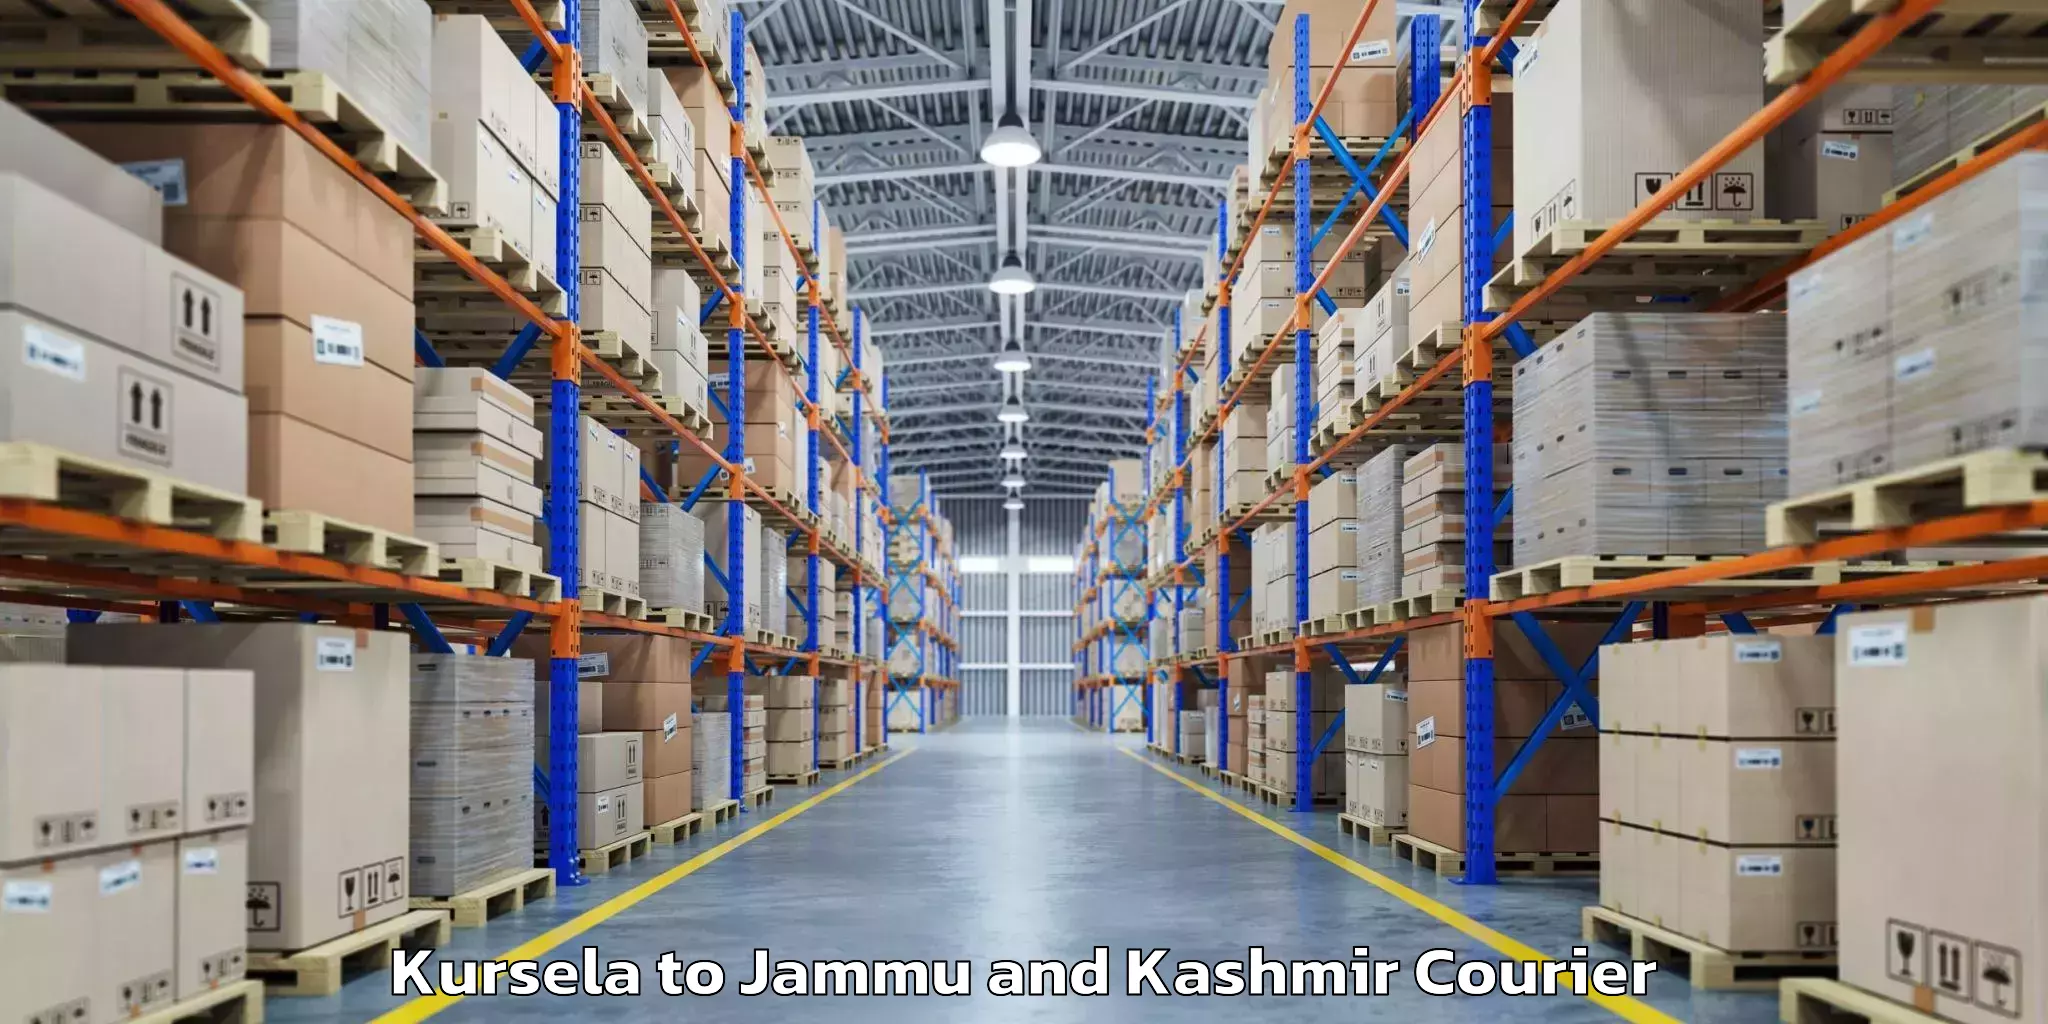 Baggage transport professionals Kursela to Jammu and Kashmir